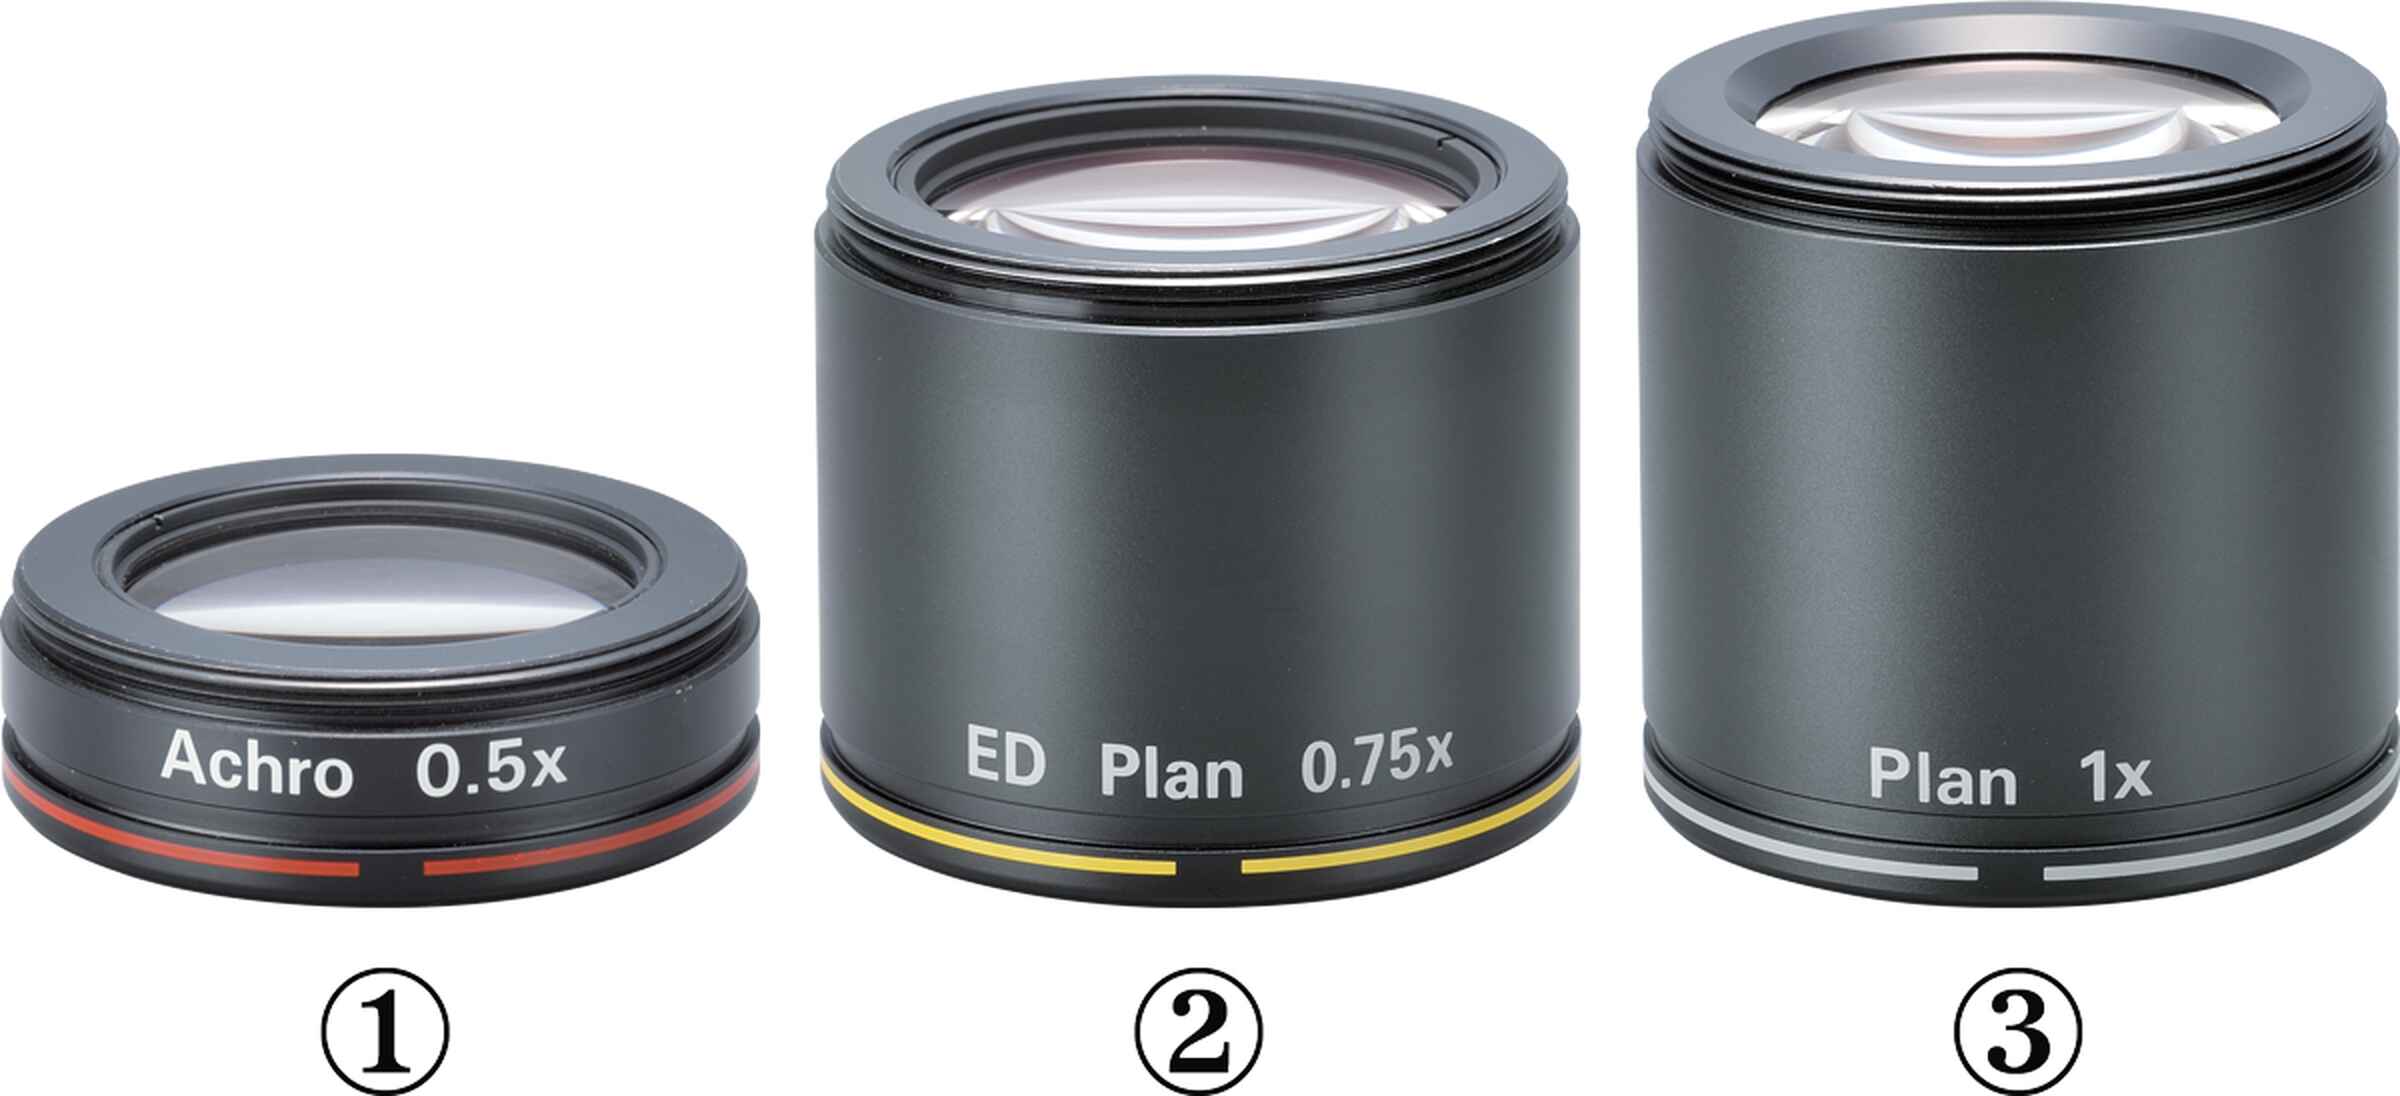 ニコン製 顕微鏡用 対物レンズ Plan Apo 4x / 0.2